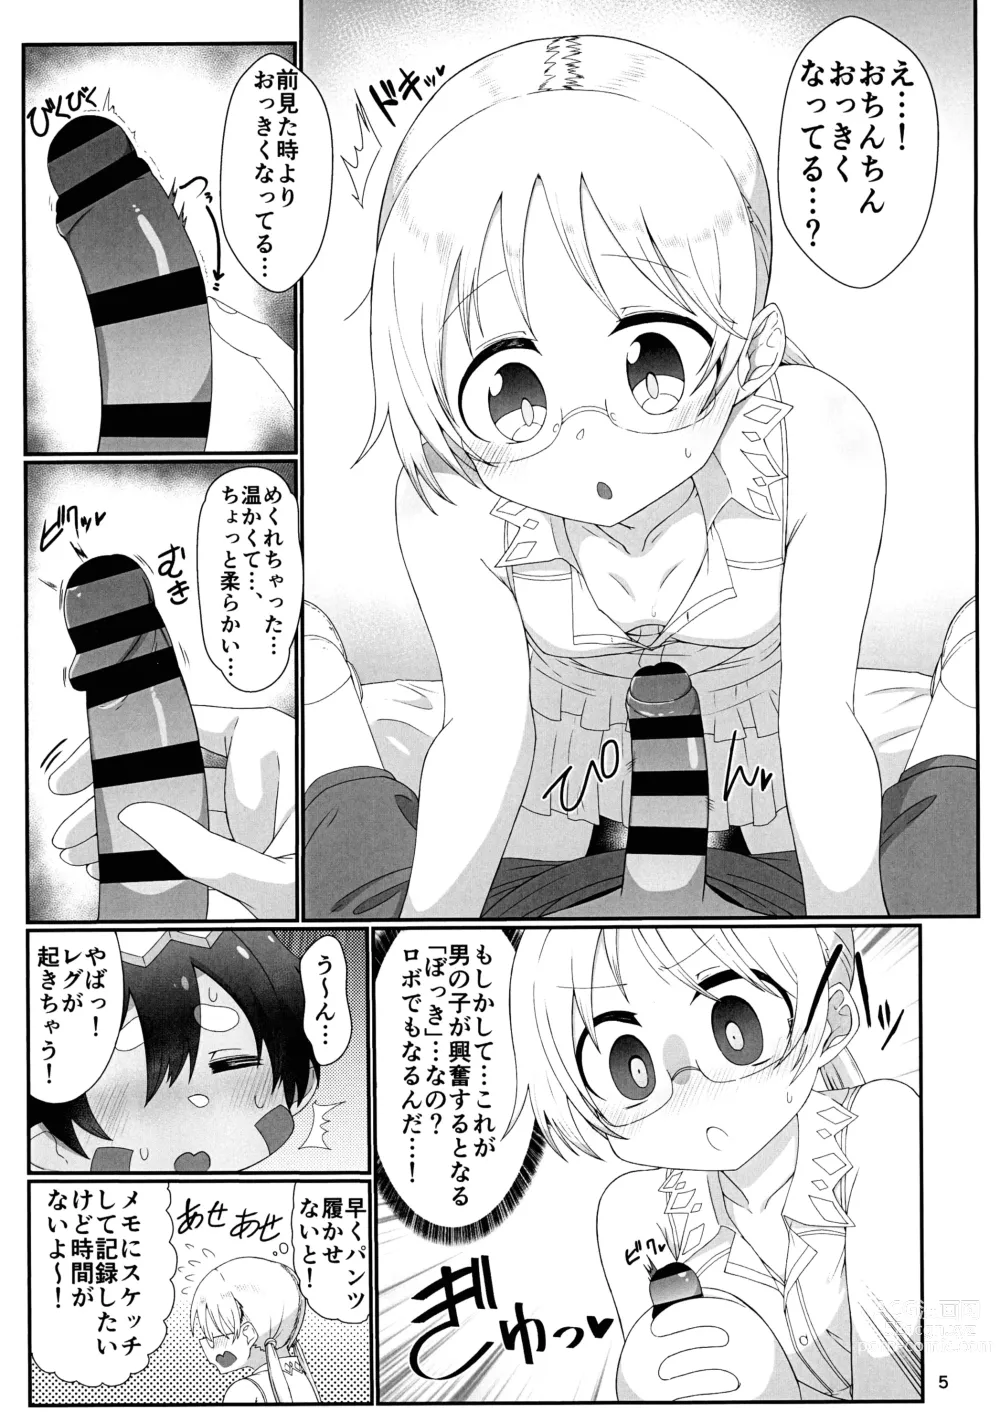 Page 5 of doujinshi Kojiin no Yoru